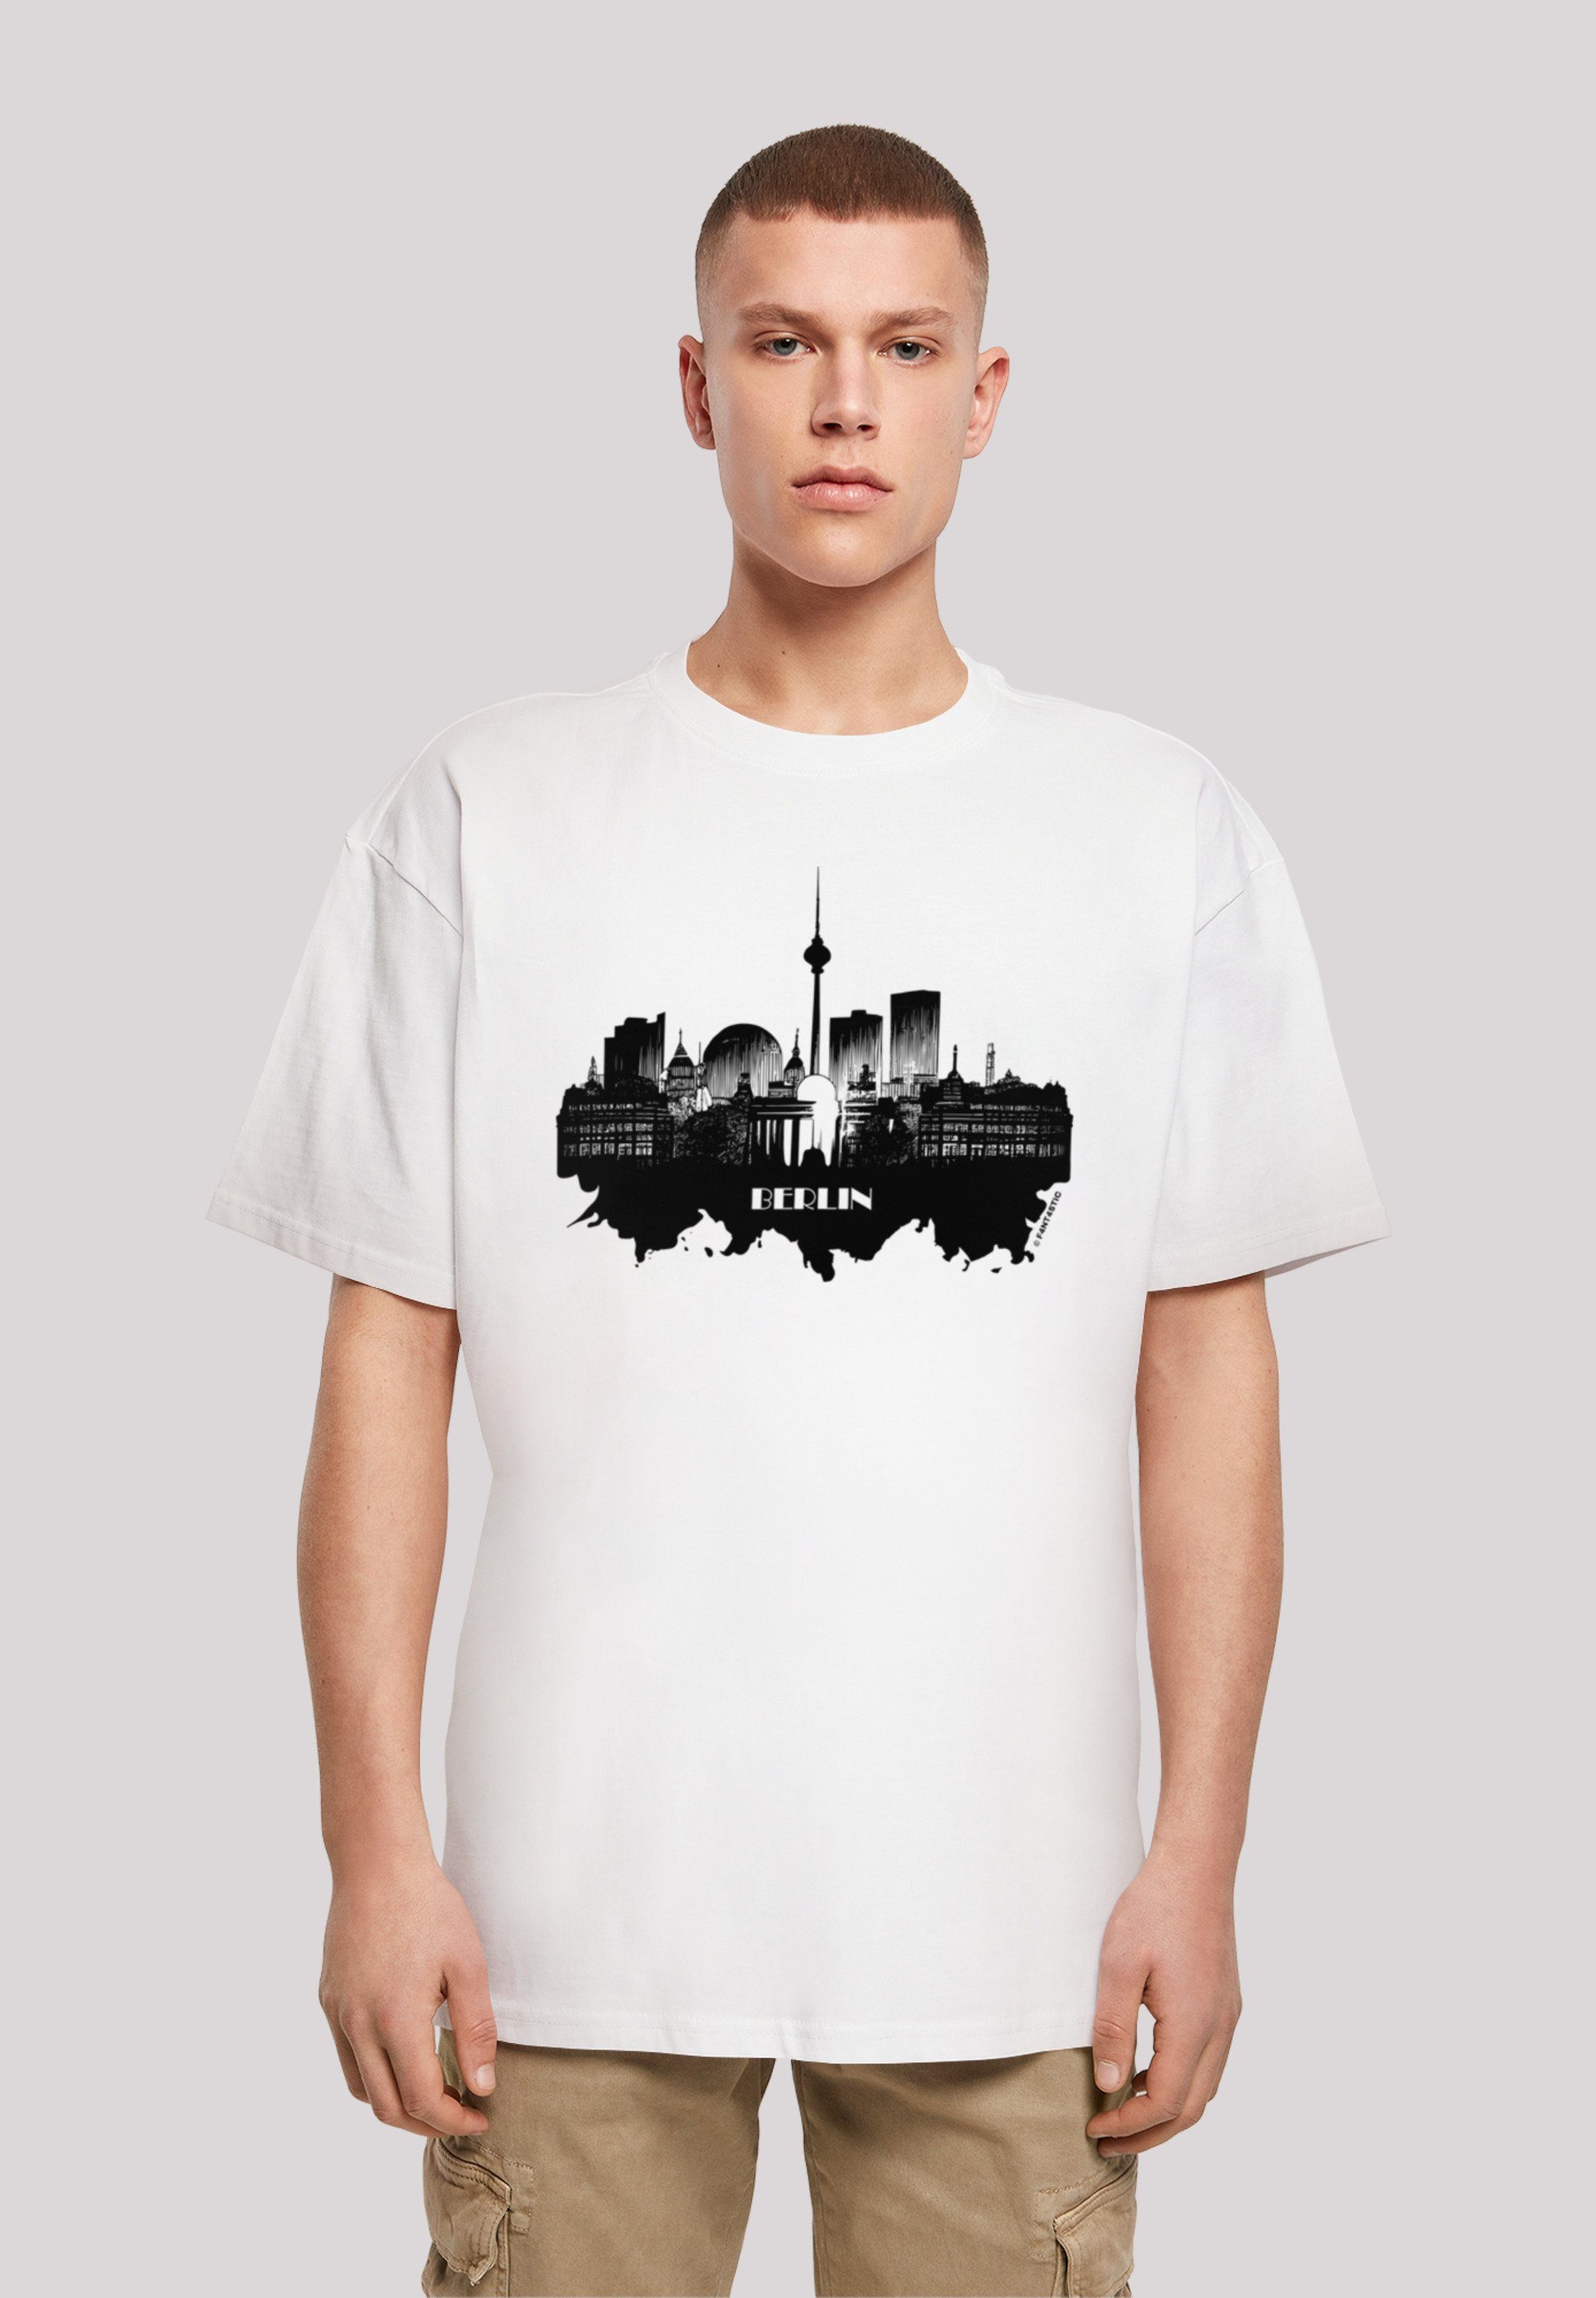 Print, F4NT4STIC aus, Größe Cities Berlin kleiner T-Shirt eine bitte - weit bestellen Collection Fällt skyline